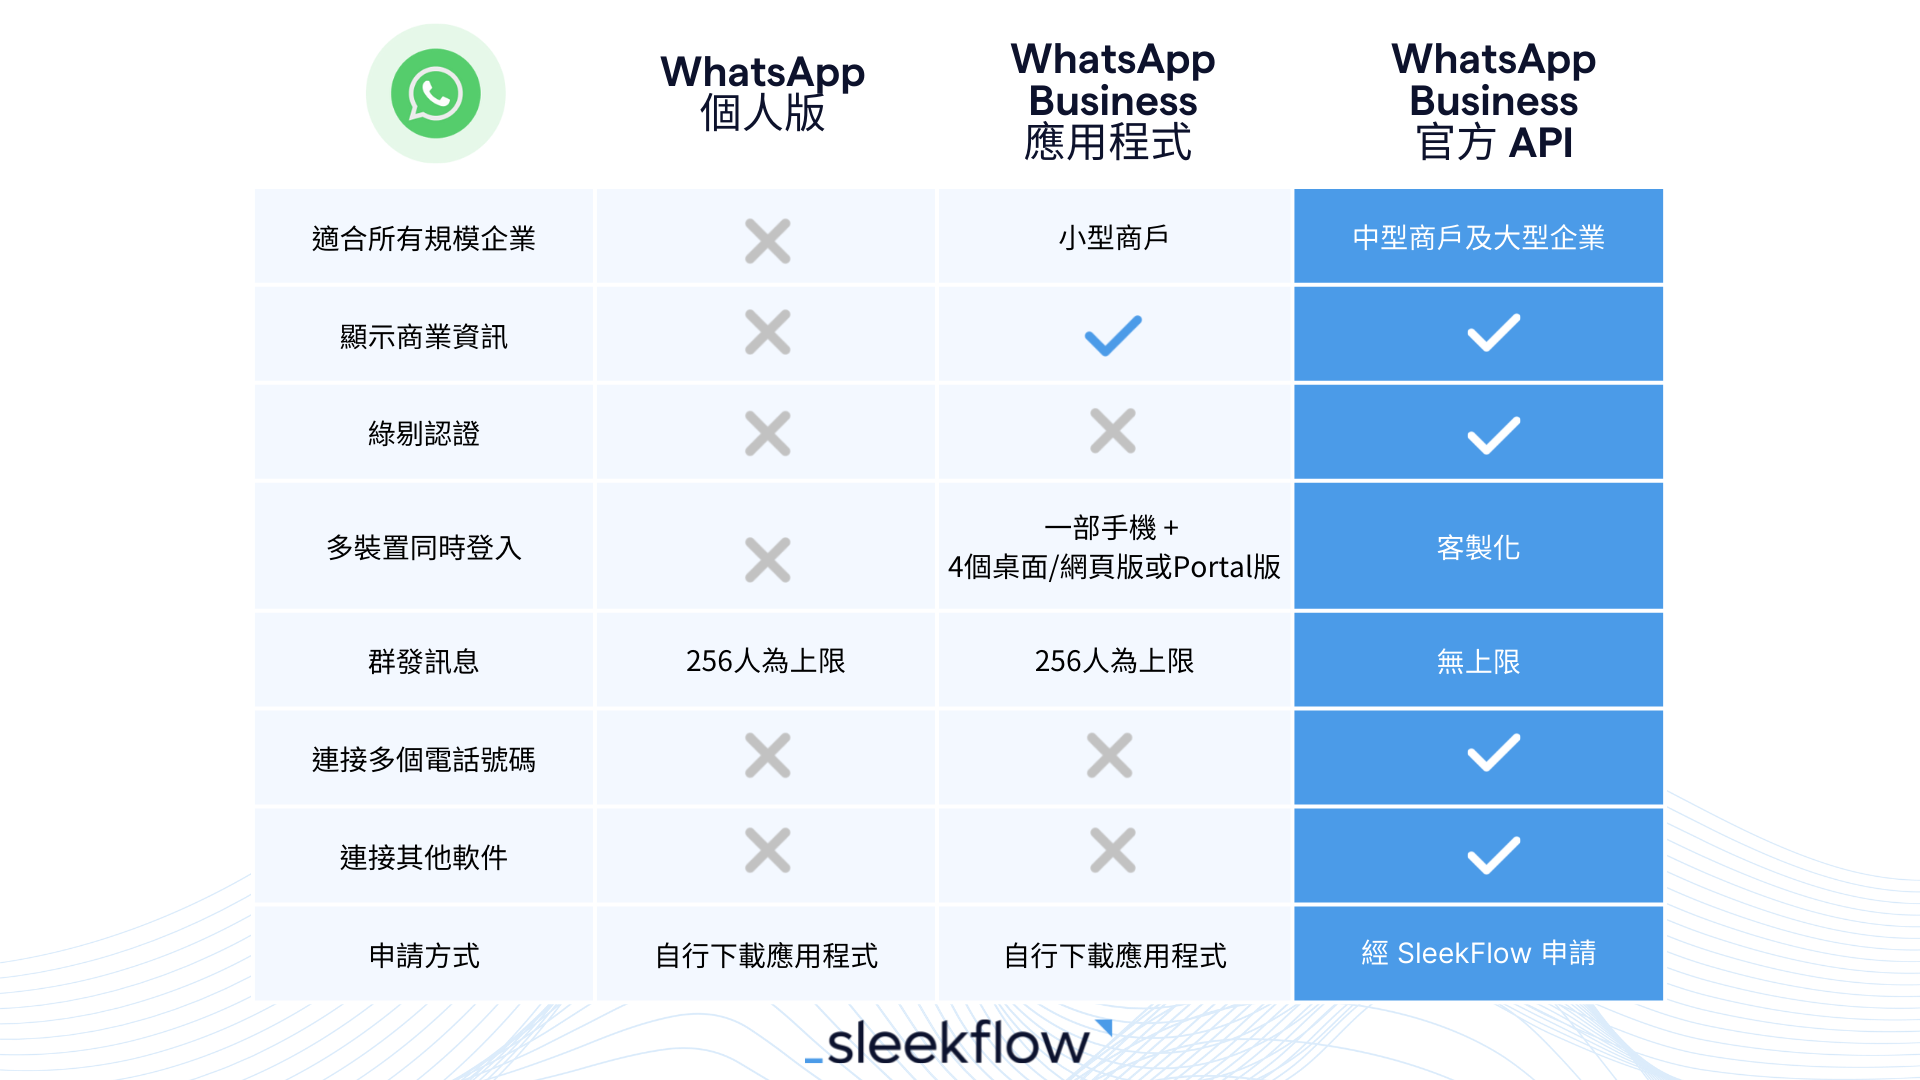 WhatsApp 個人版、商業版及API比較